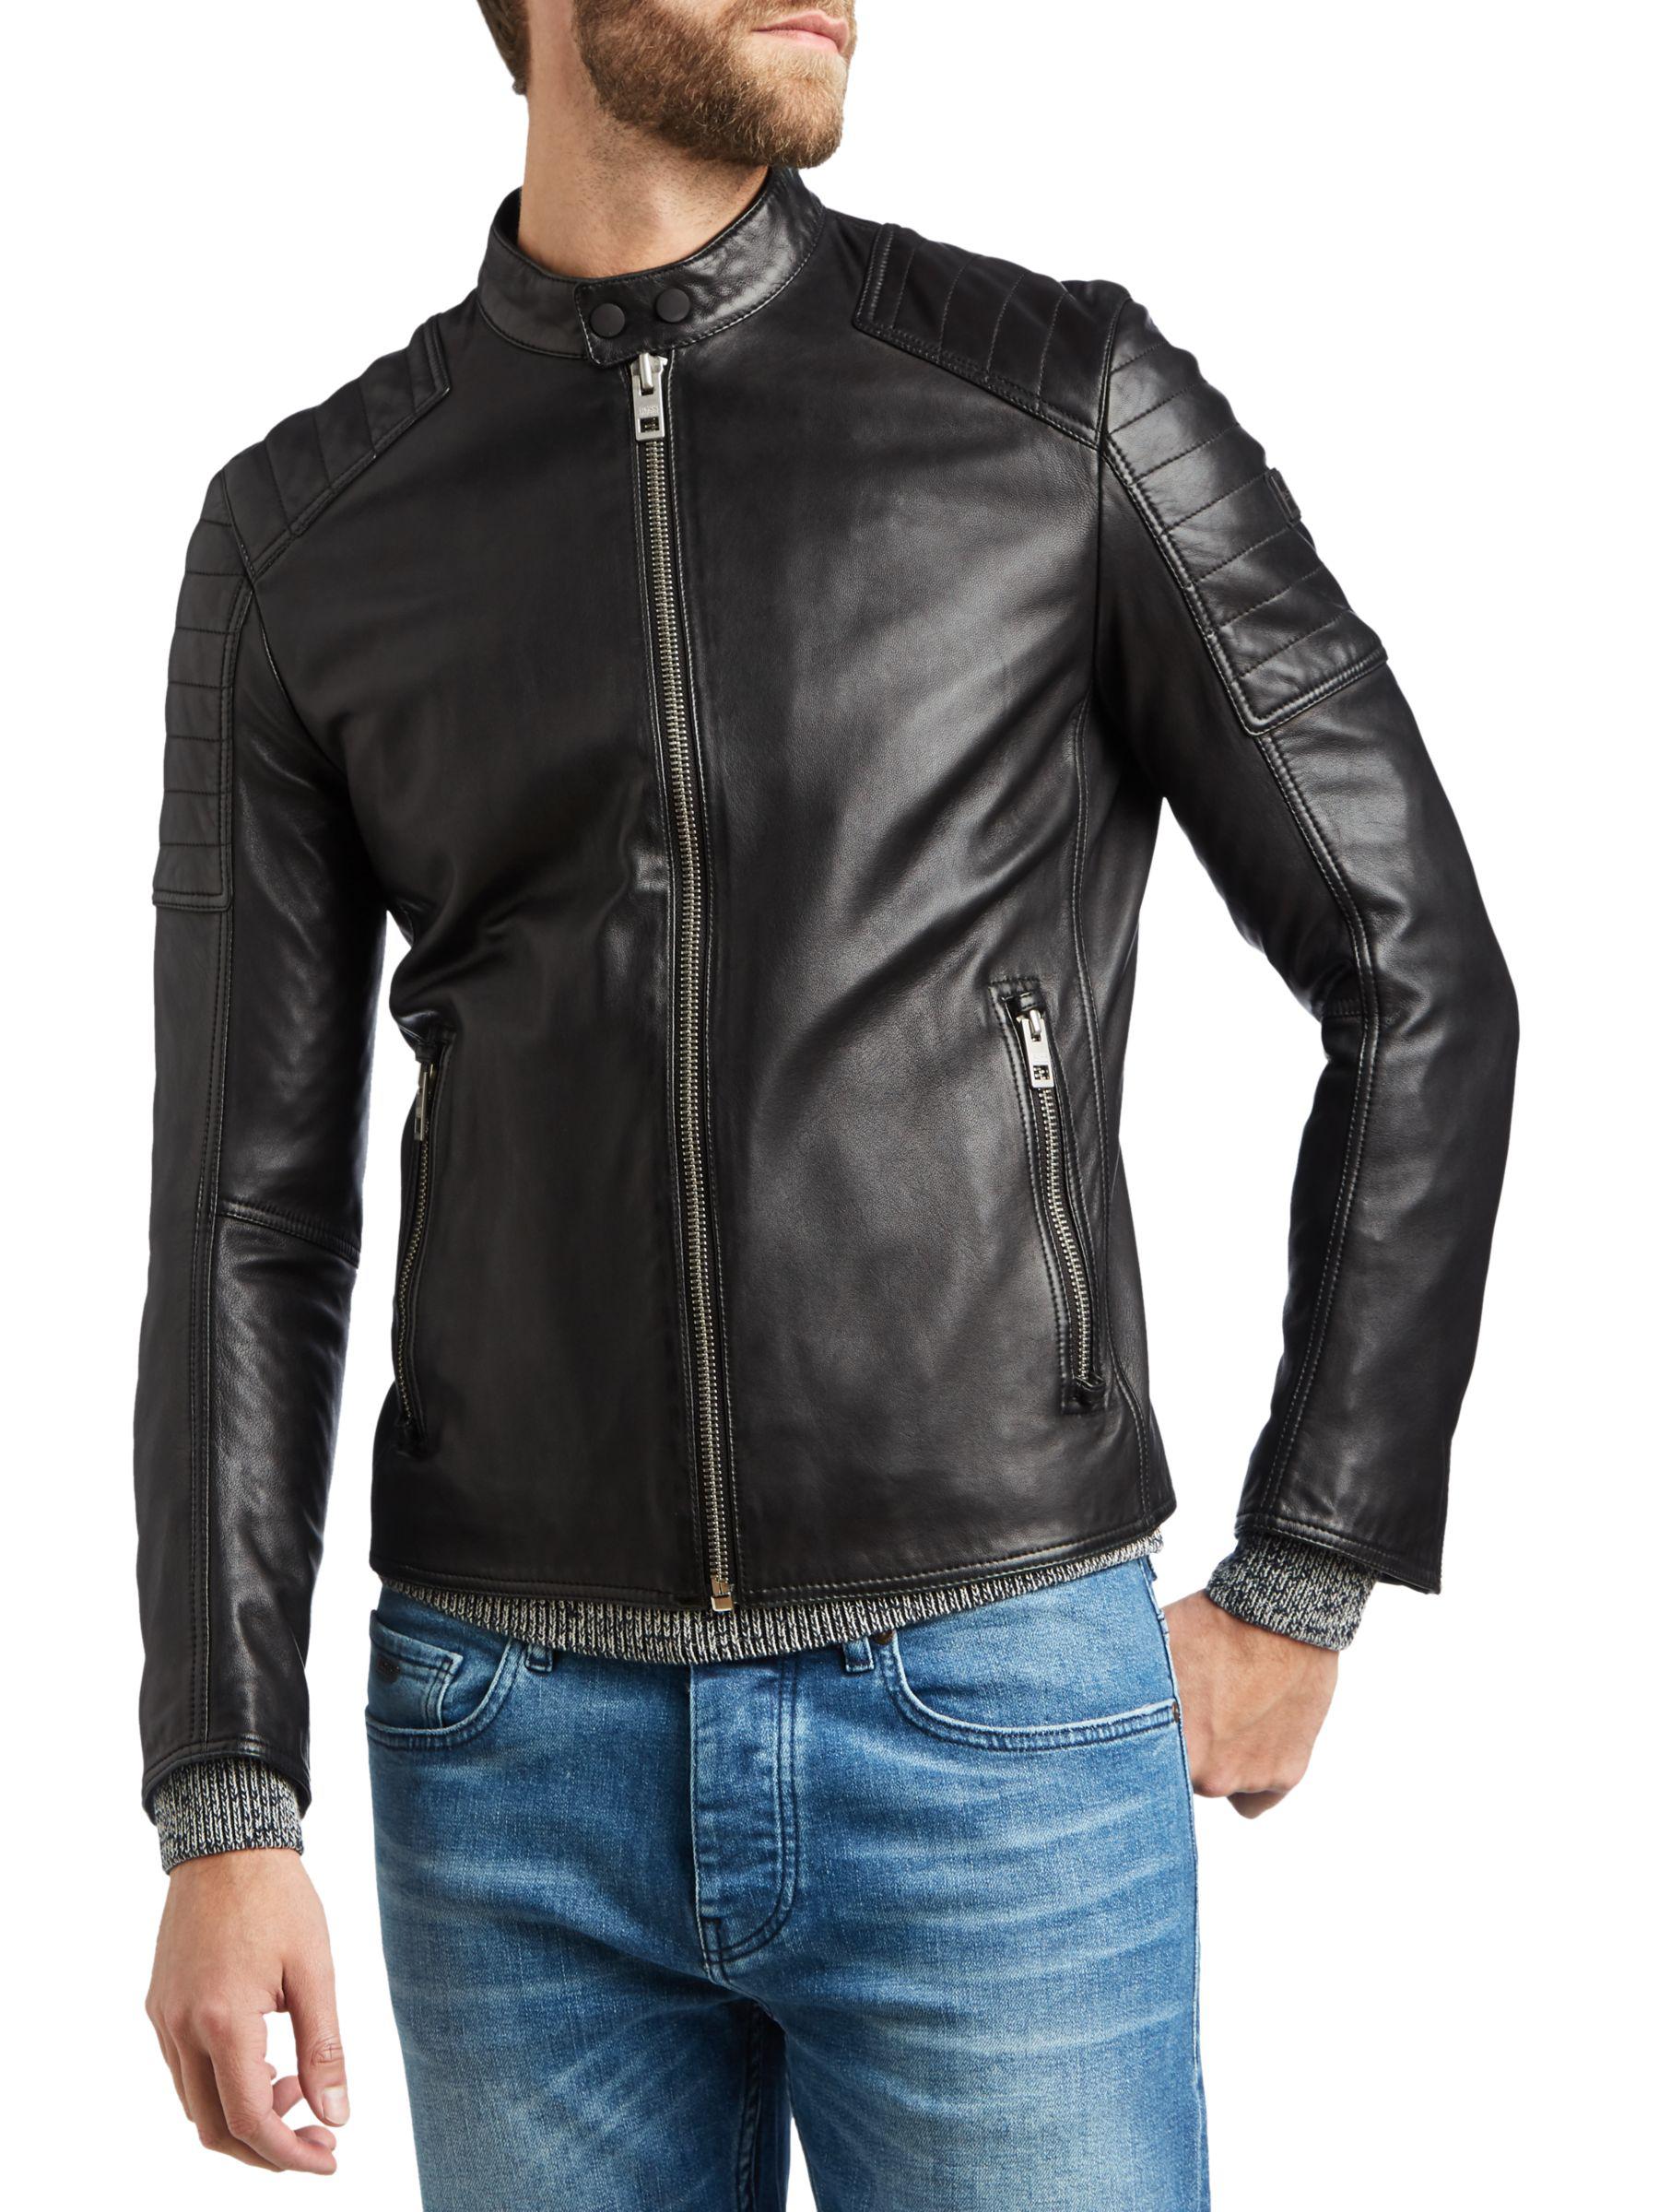 hugo boss jackson leather jacket